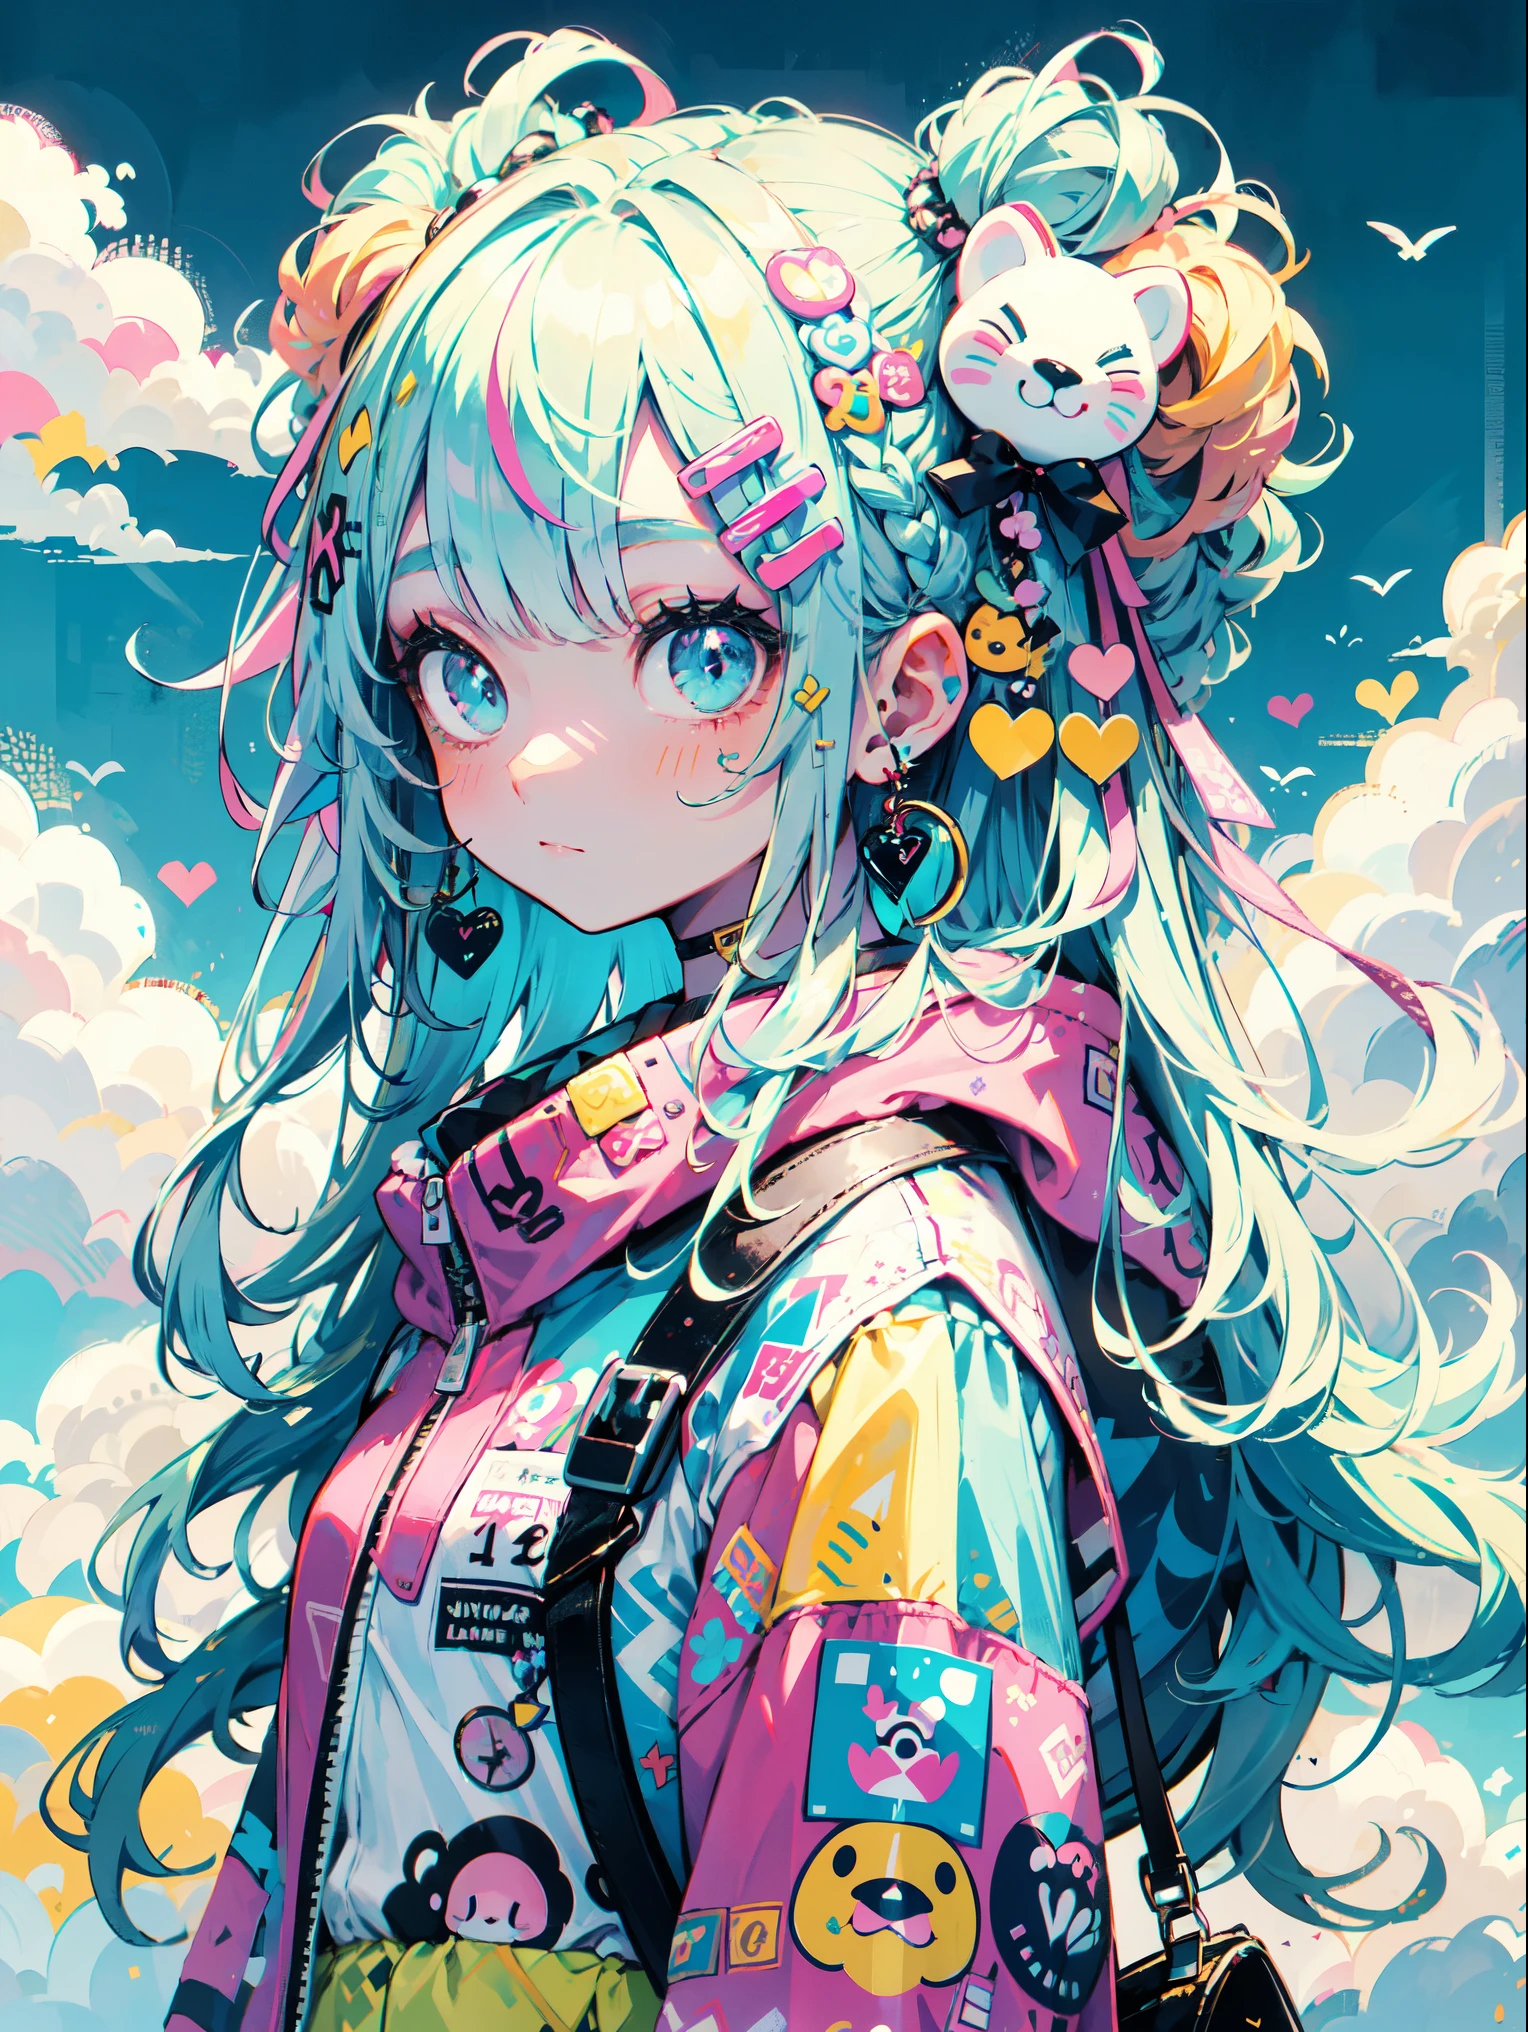 "kawaii, mignon, Adorable fille en rose, jaune, et palette de couleurs bleu ciel. Elle porte des vêtements sur le thème du ciel avec des motifs de nuages et de ciel. Sa tenue est moelleuse et douce, Avec des accessoires de décoration comme des pinces à cheveux. Elle incarne un style de mode Harajuku vibrant et tendance."